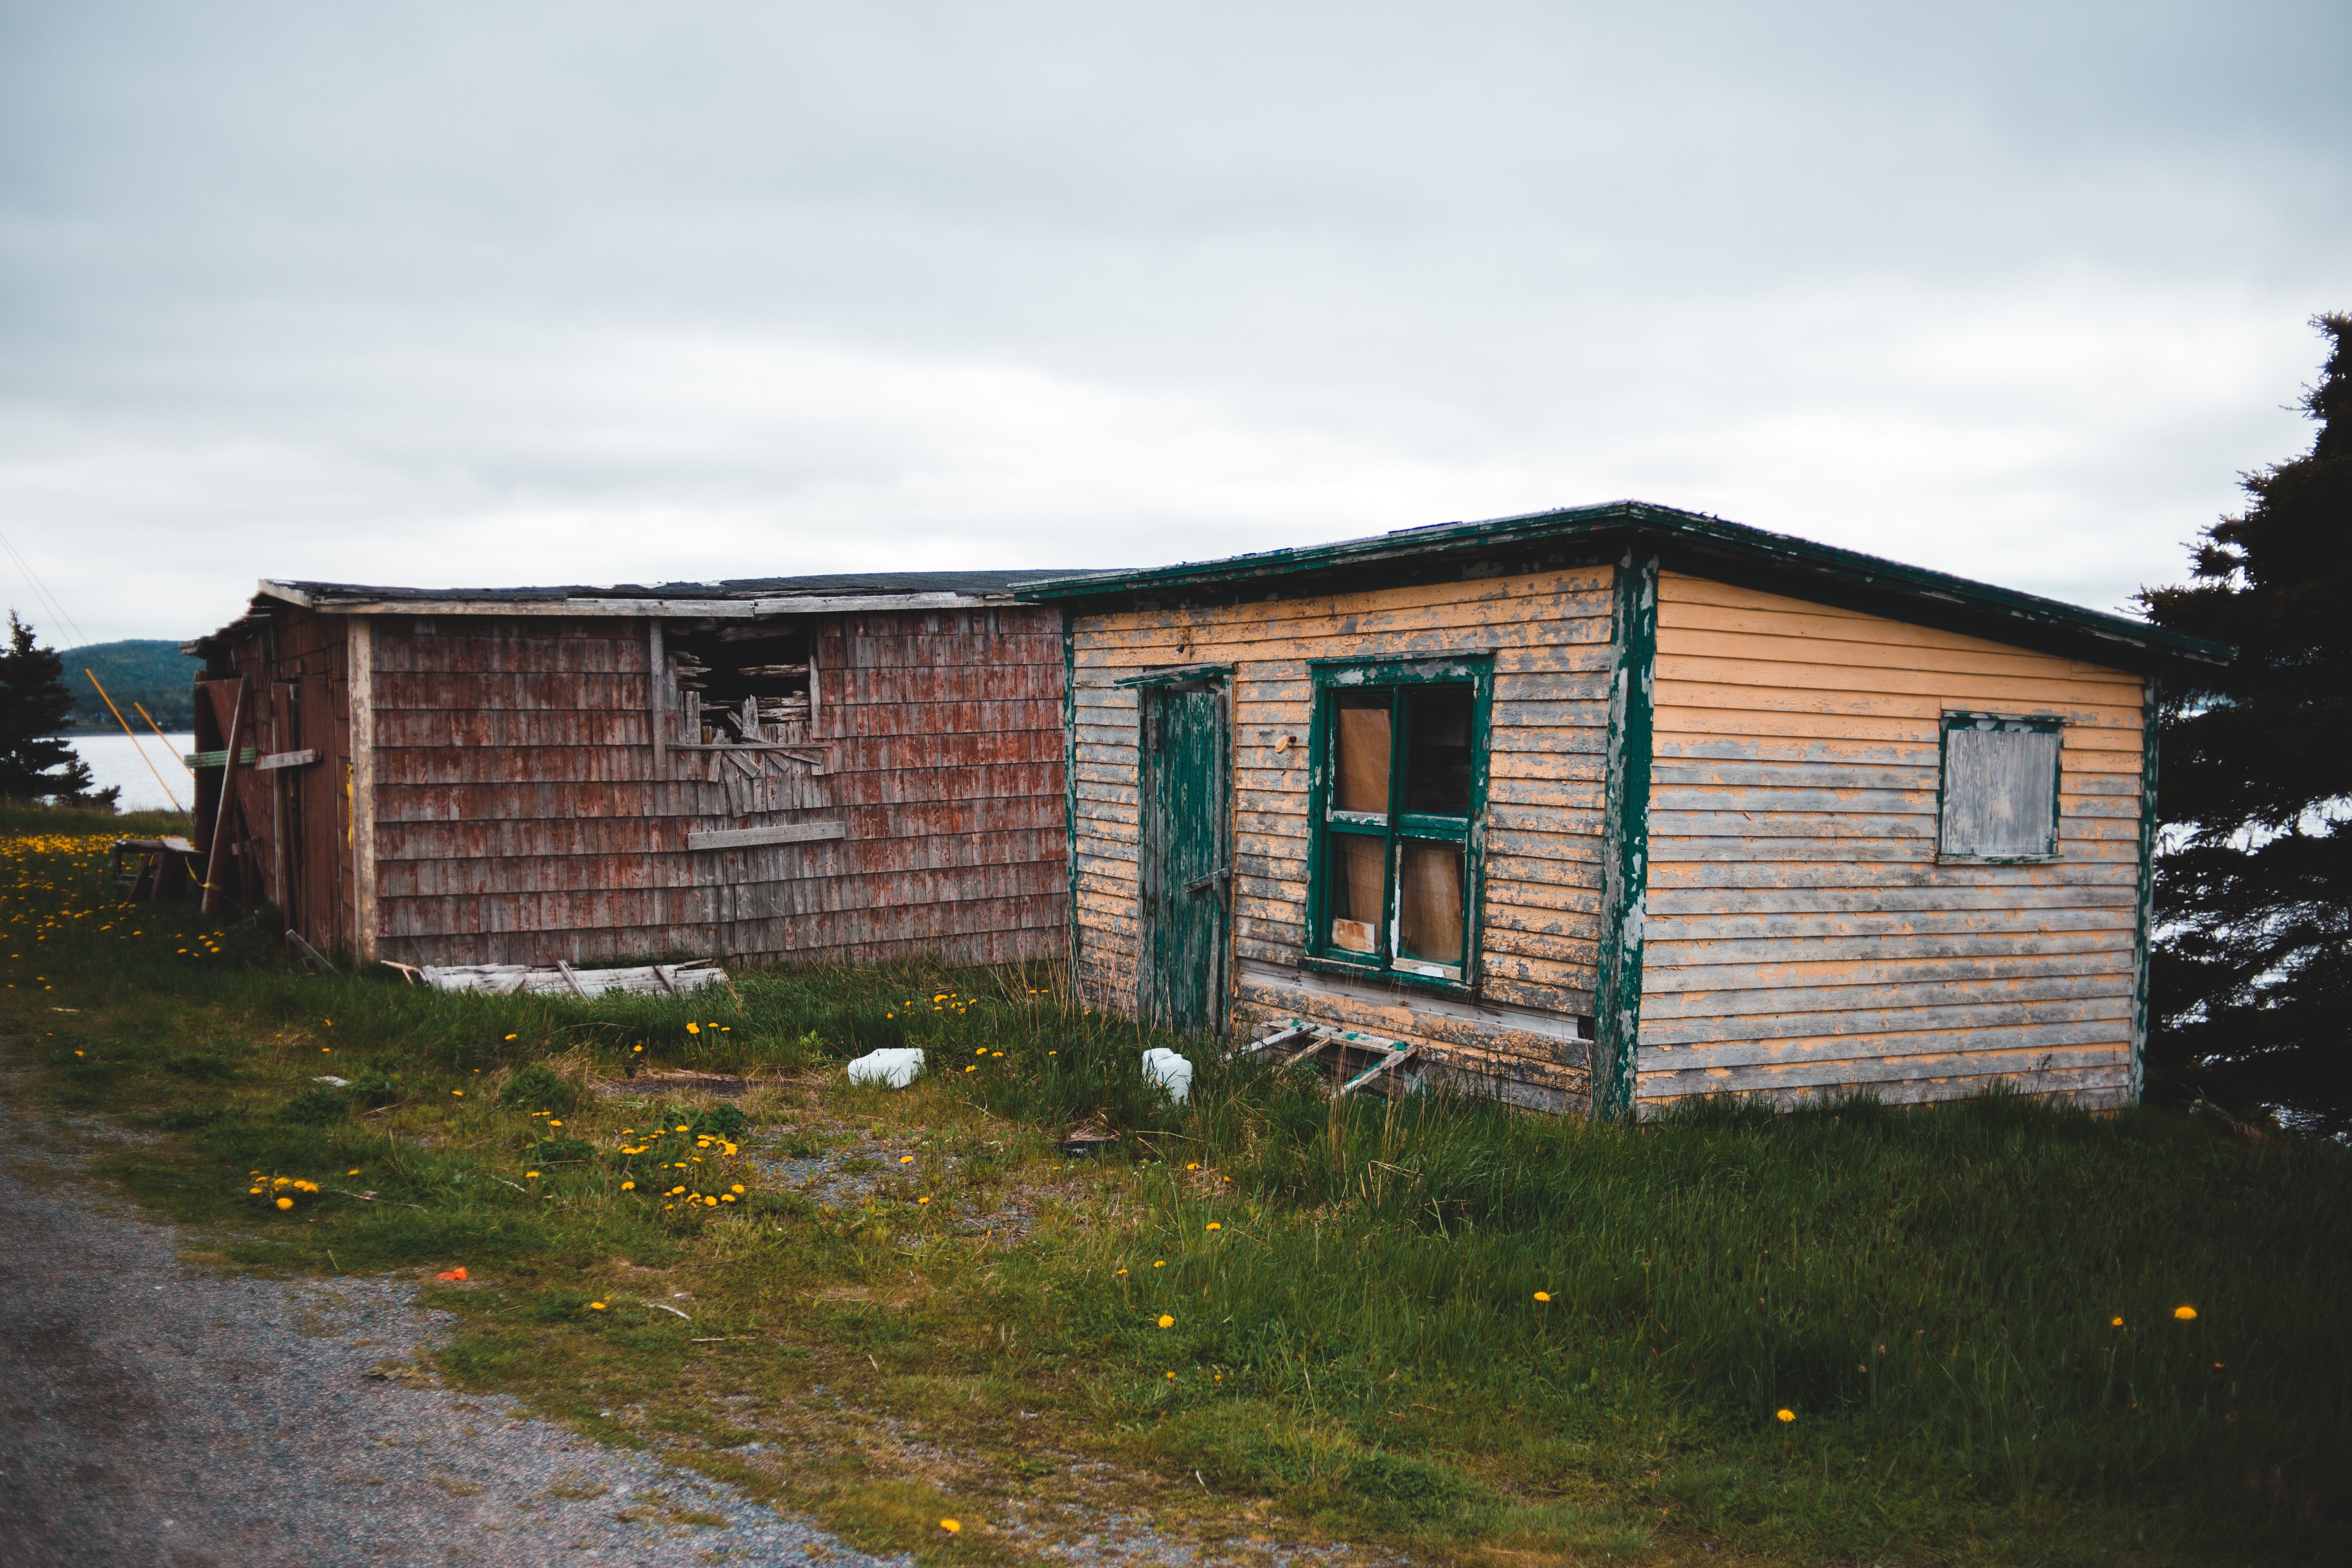 Eleanor lebte in einer dunklen und schmuddeligen Hütte. | Quelle: Pexels